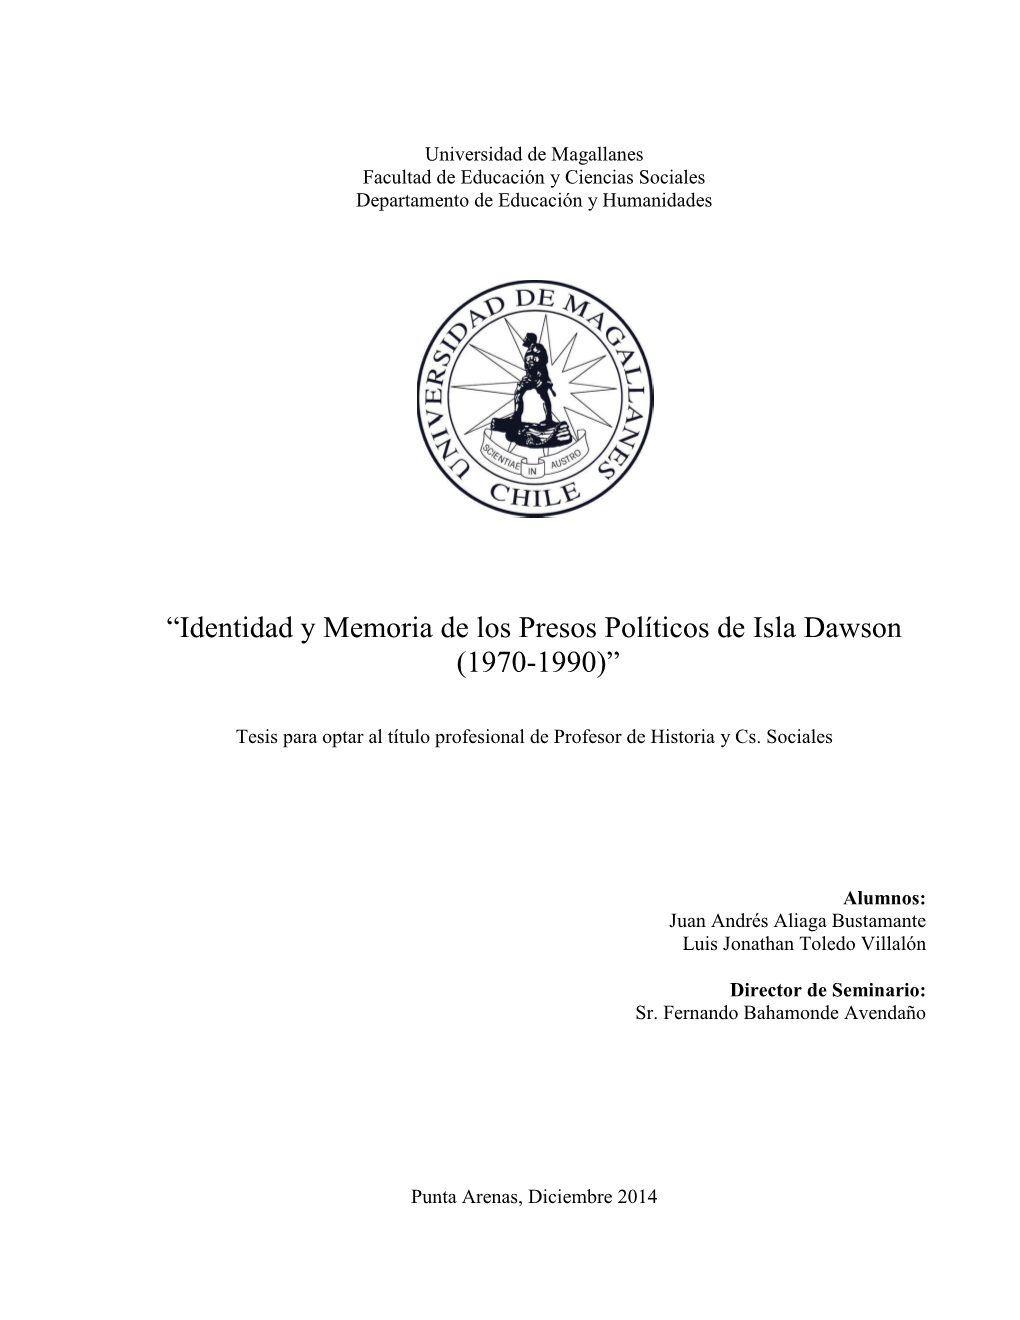 Identidad Y Memoria De Los Presos Políticos De Isla Dawson (1970-1990)”